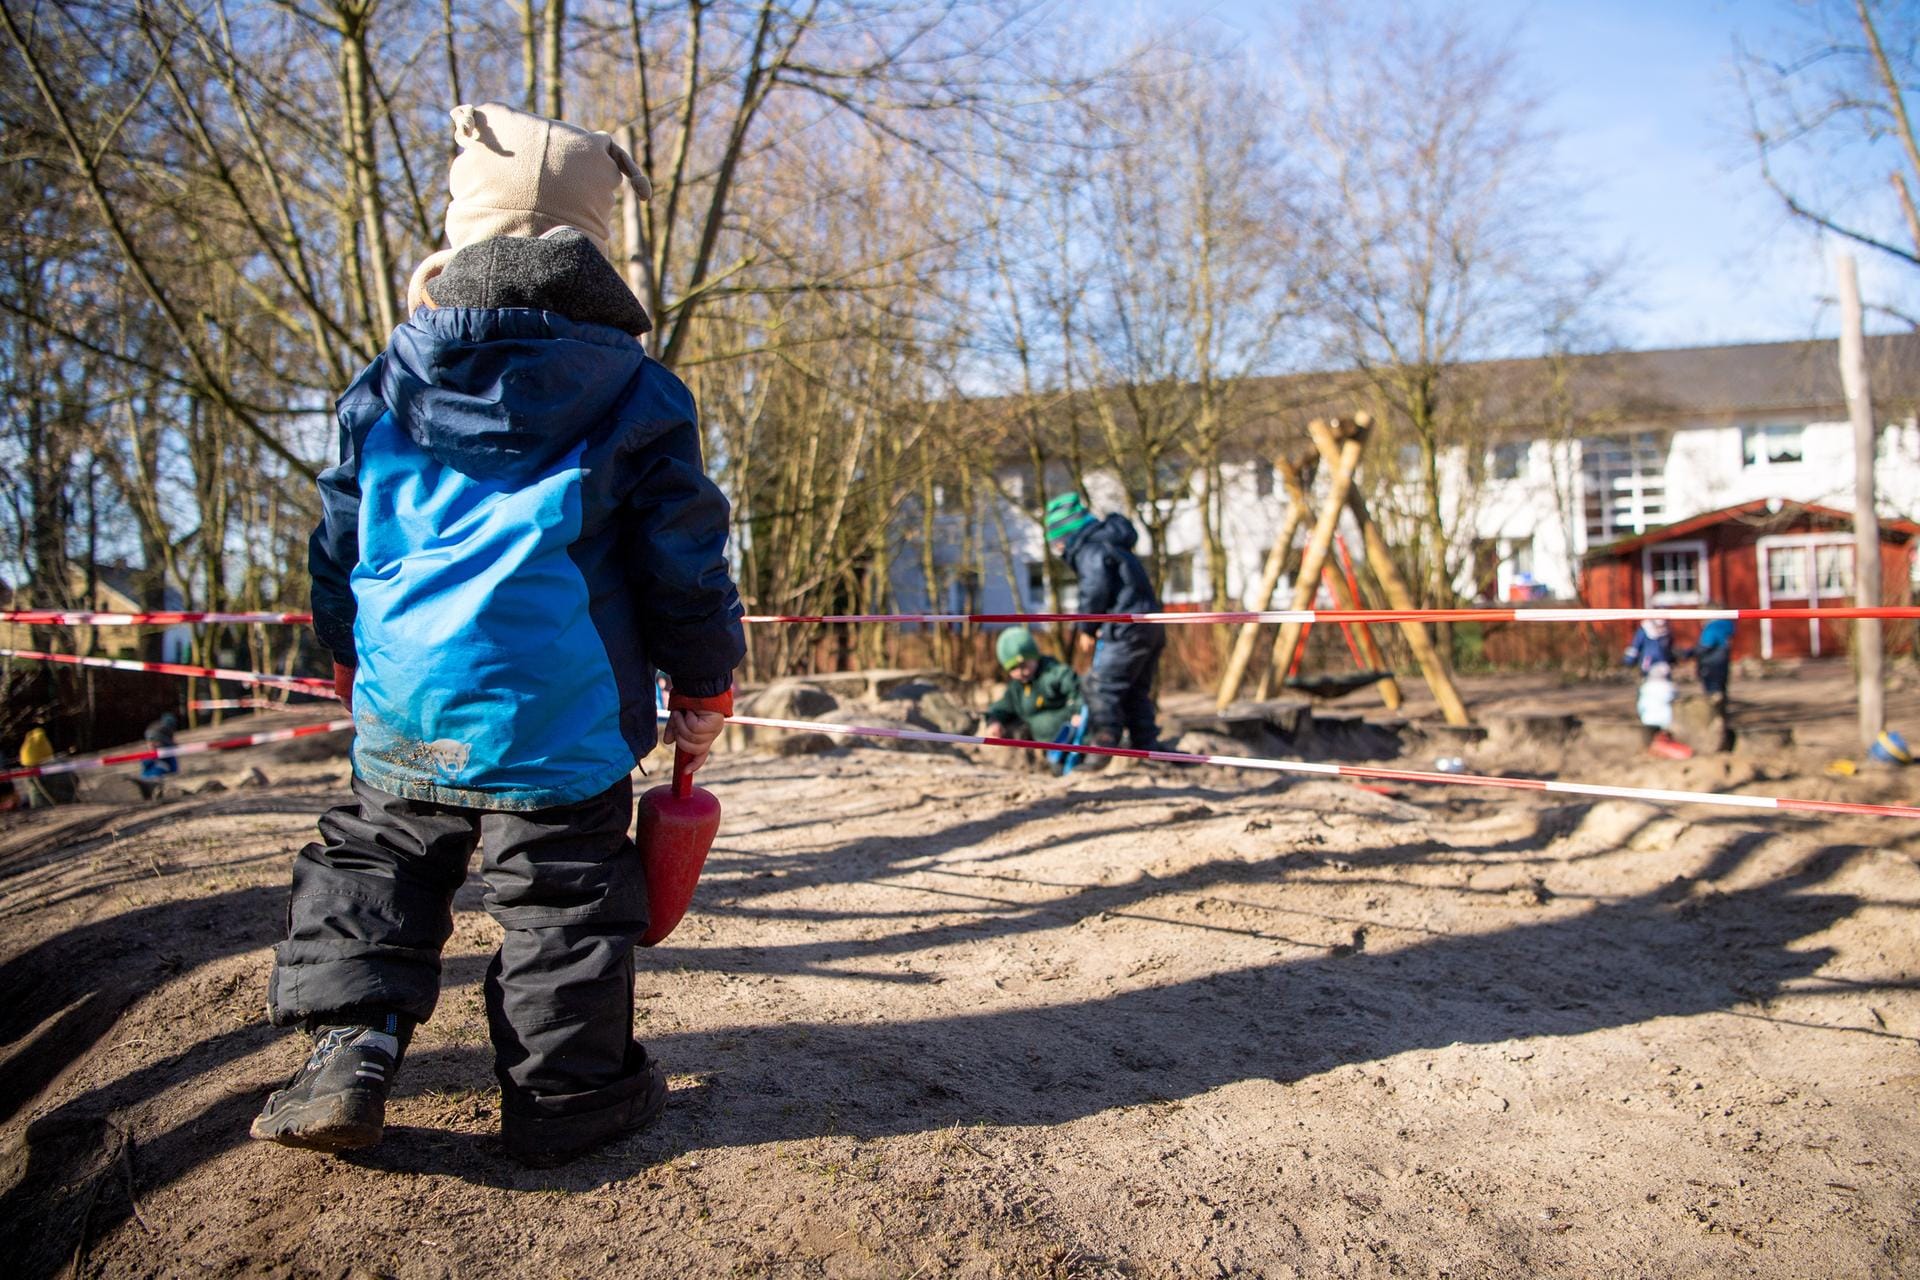 Der Spielplatz der Kita in Delmenhorst ist mit Absperrband in Bereiche aufgeteilt, um die Kinder aus unterschiedlichen Gruppen zu trennen.